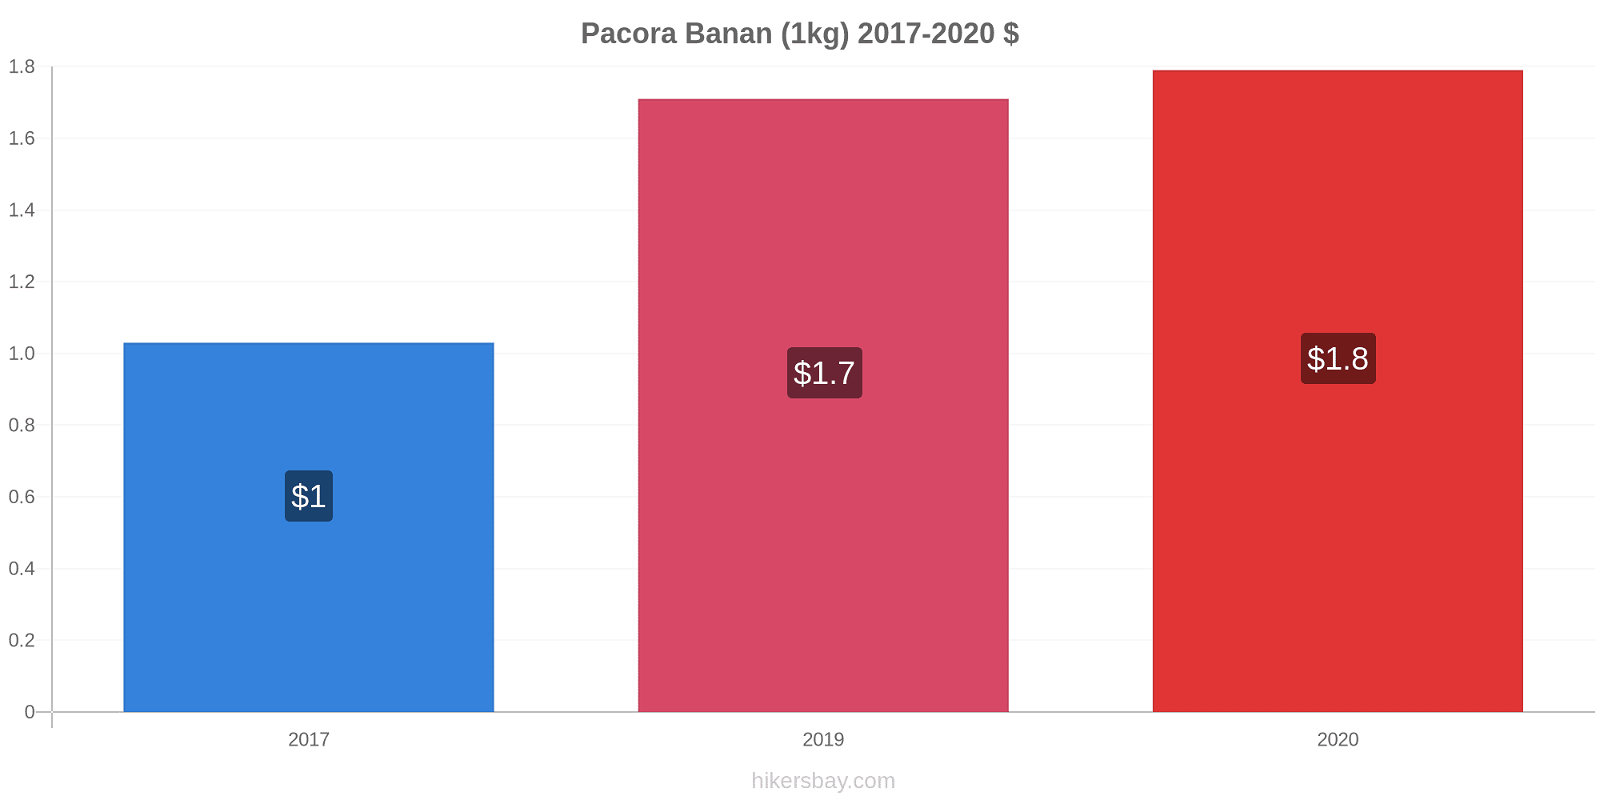 Pacora prisförändringar Banan (1kg) hikersbay.com